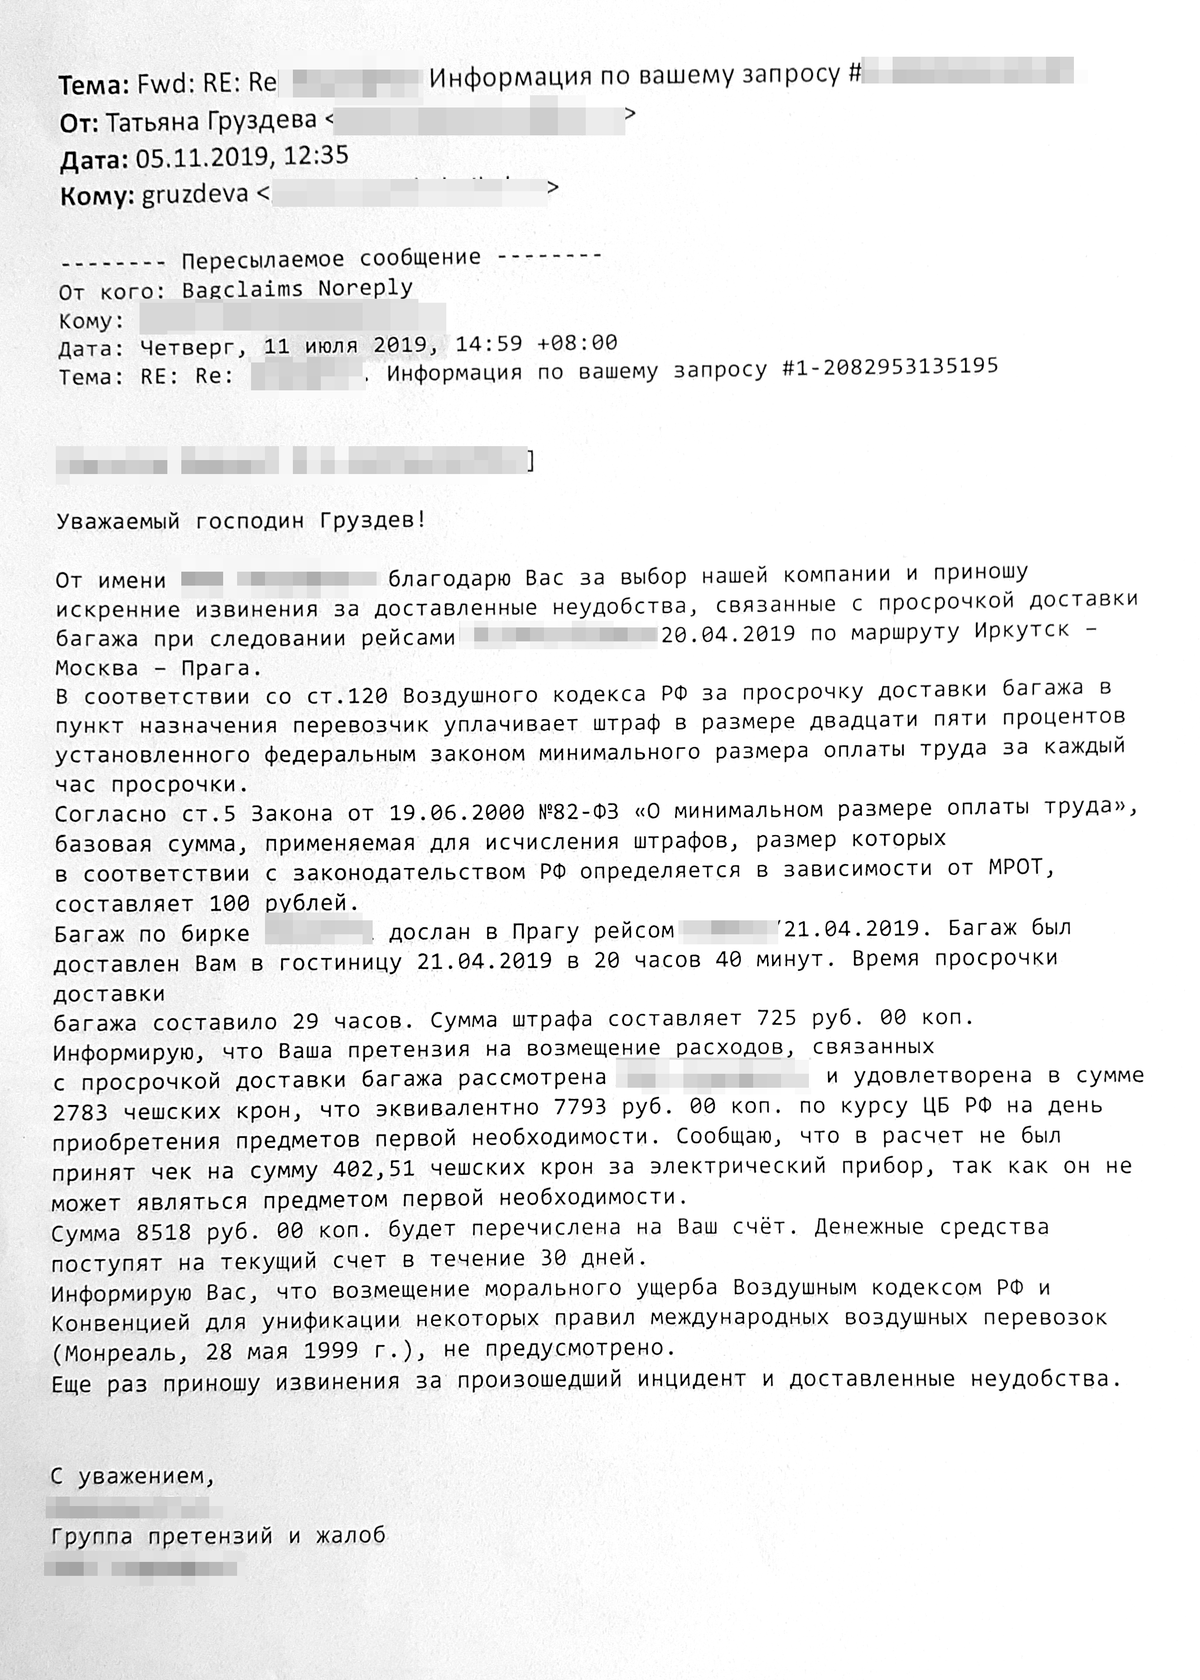 Ответ на претензию авиакомпания прислала на электронную почту Сергея. Она отказала в компенсации морального вреда и снизила сумму штрафа и убытков